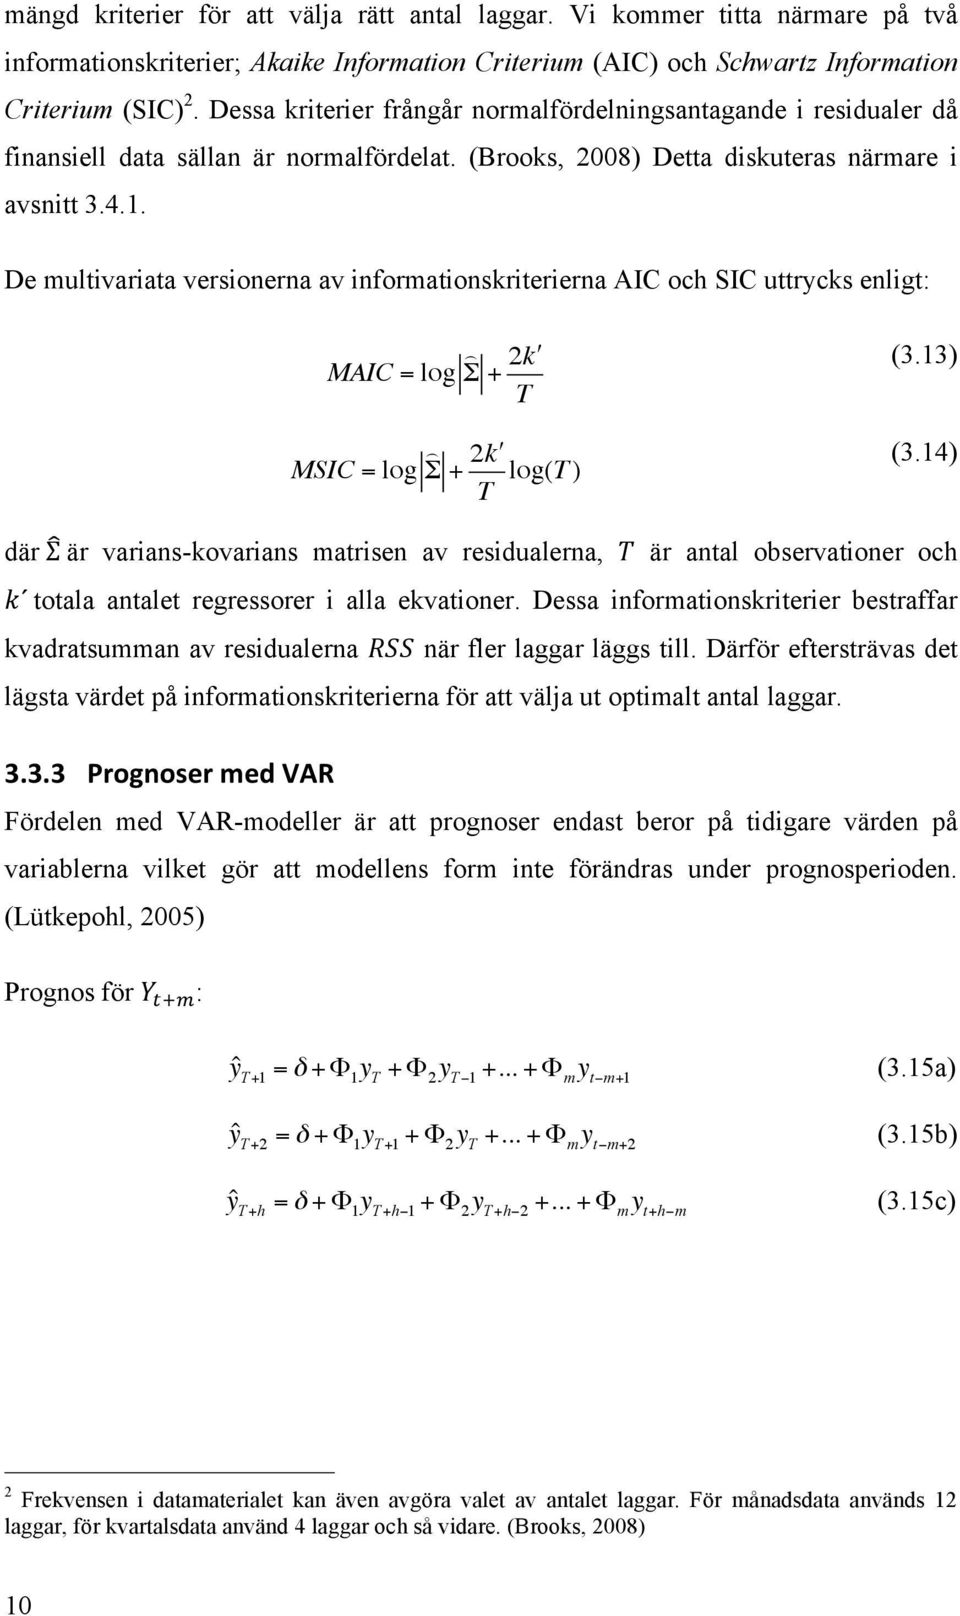 De multivariata versionerna av informationskriterierna AIC och SIC uttrycks enligt: MAIC = log Σ + 2 k" T (3.13) MSIC = log Σ + 2 k" T log(t ) (3.